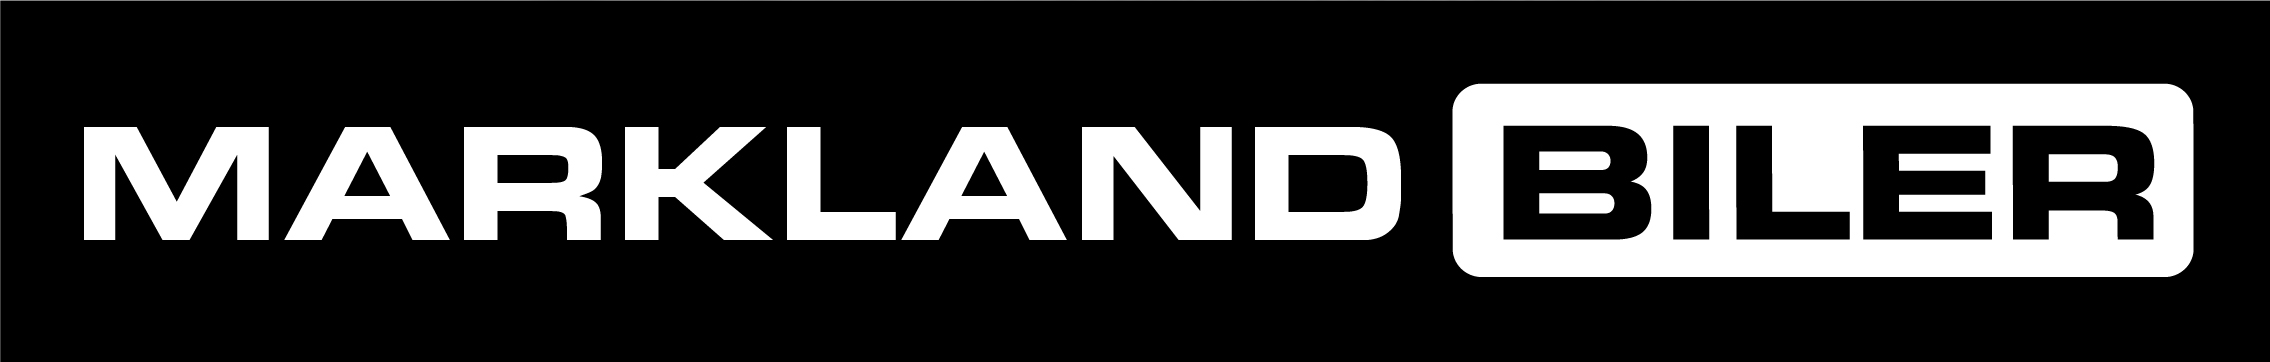 Markland Biler logo